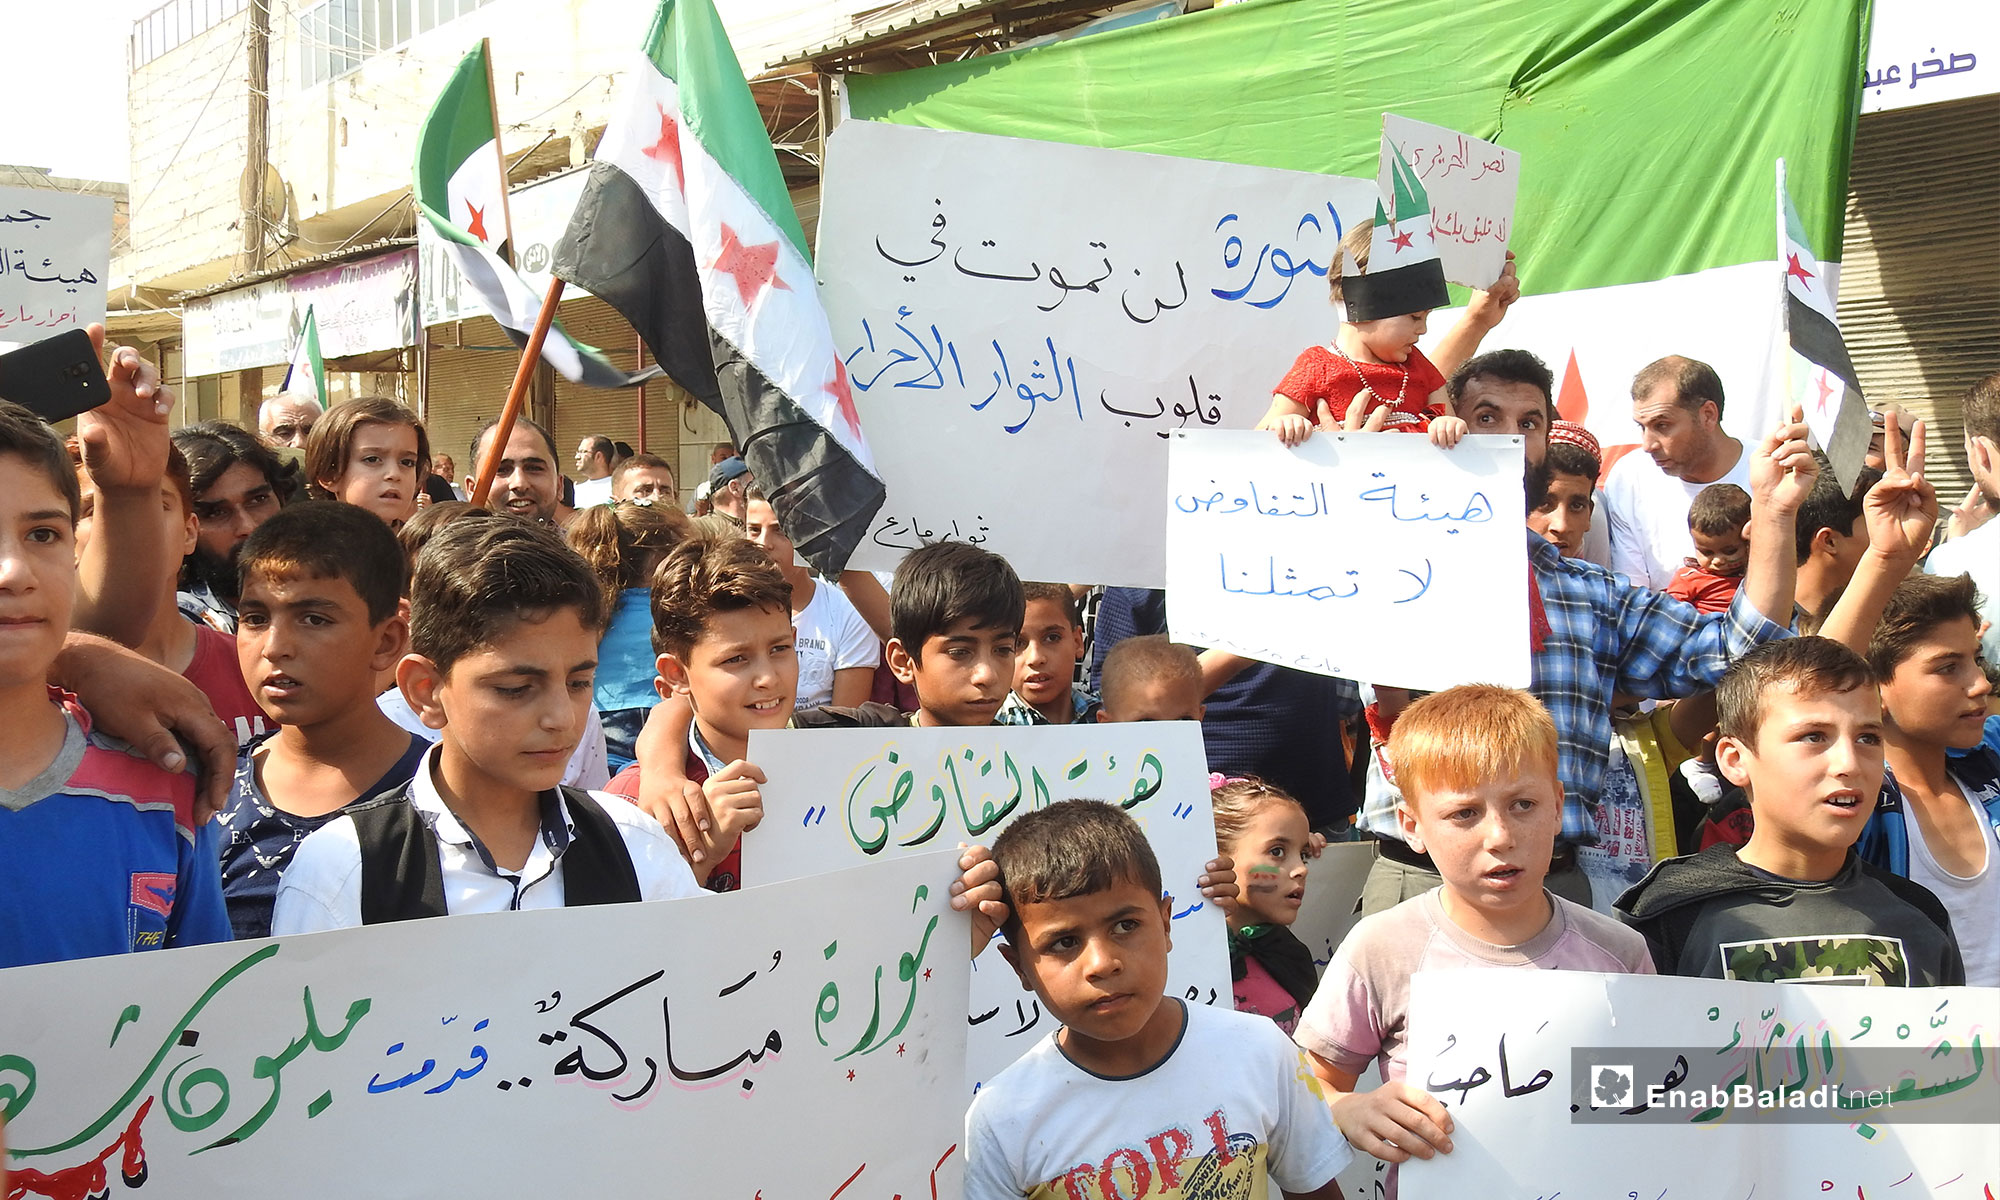 مظاهرات في بلدة مارع بريف حلب تطالب بإسقاط النظام السوري- 5 تشرين الأول 2018 (عنب بلدي)